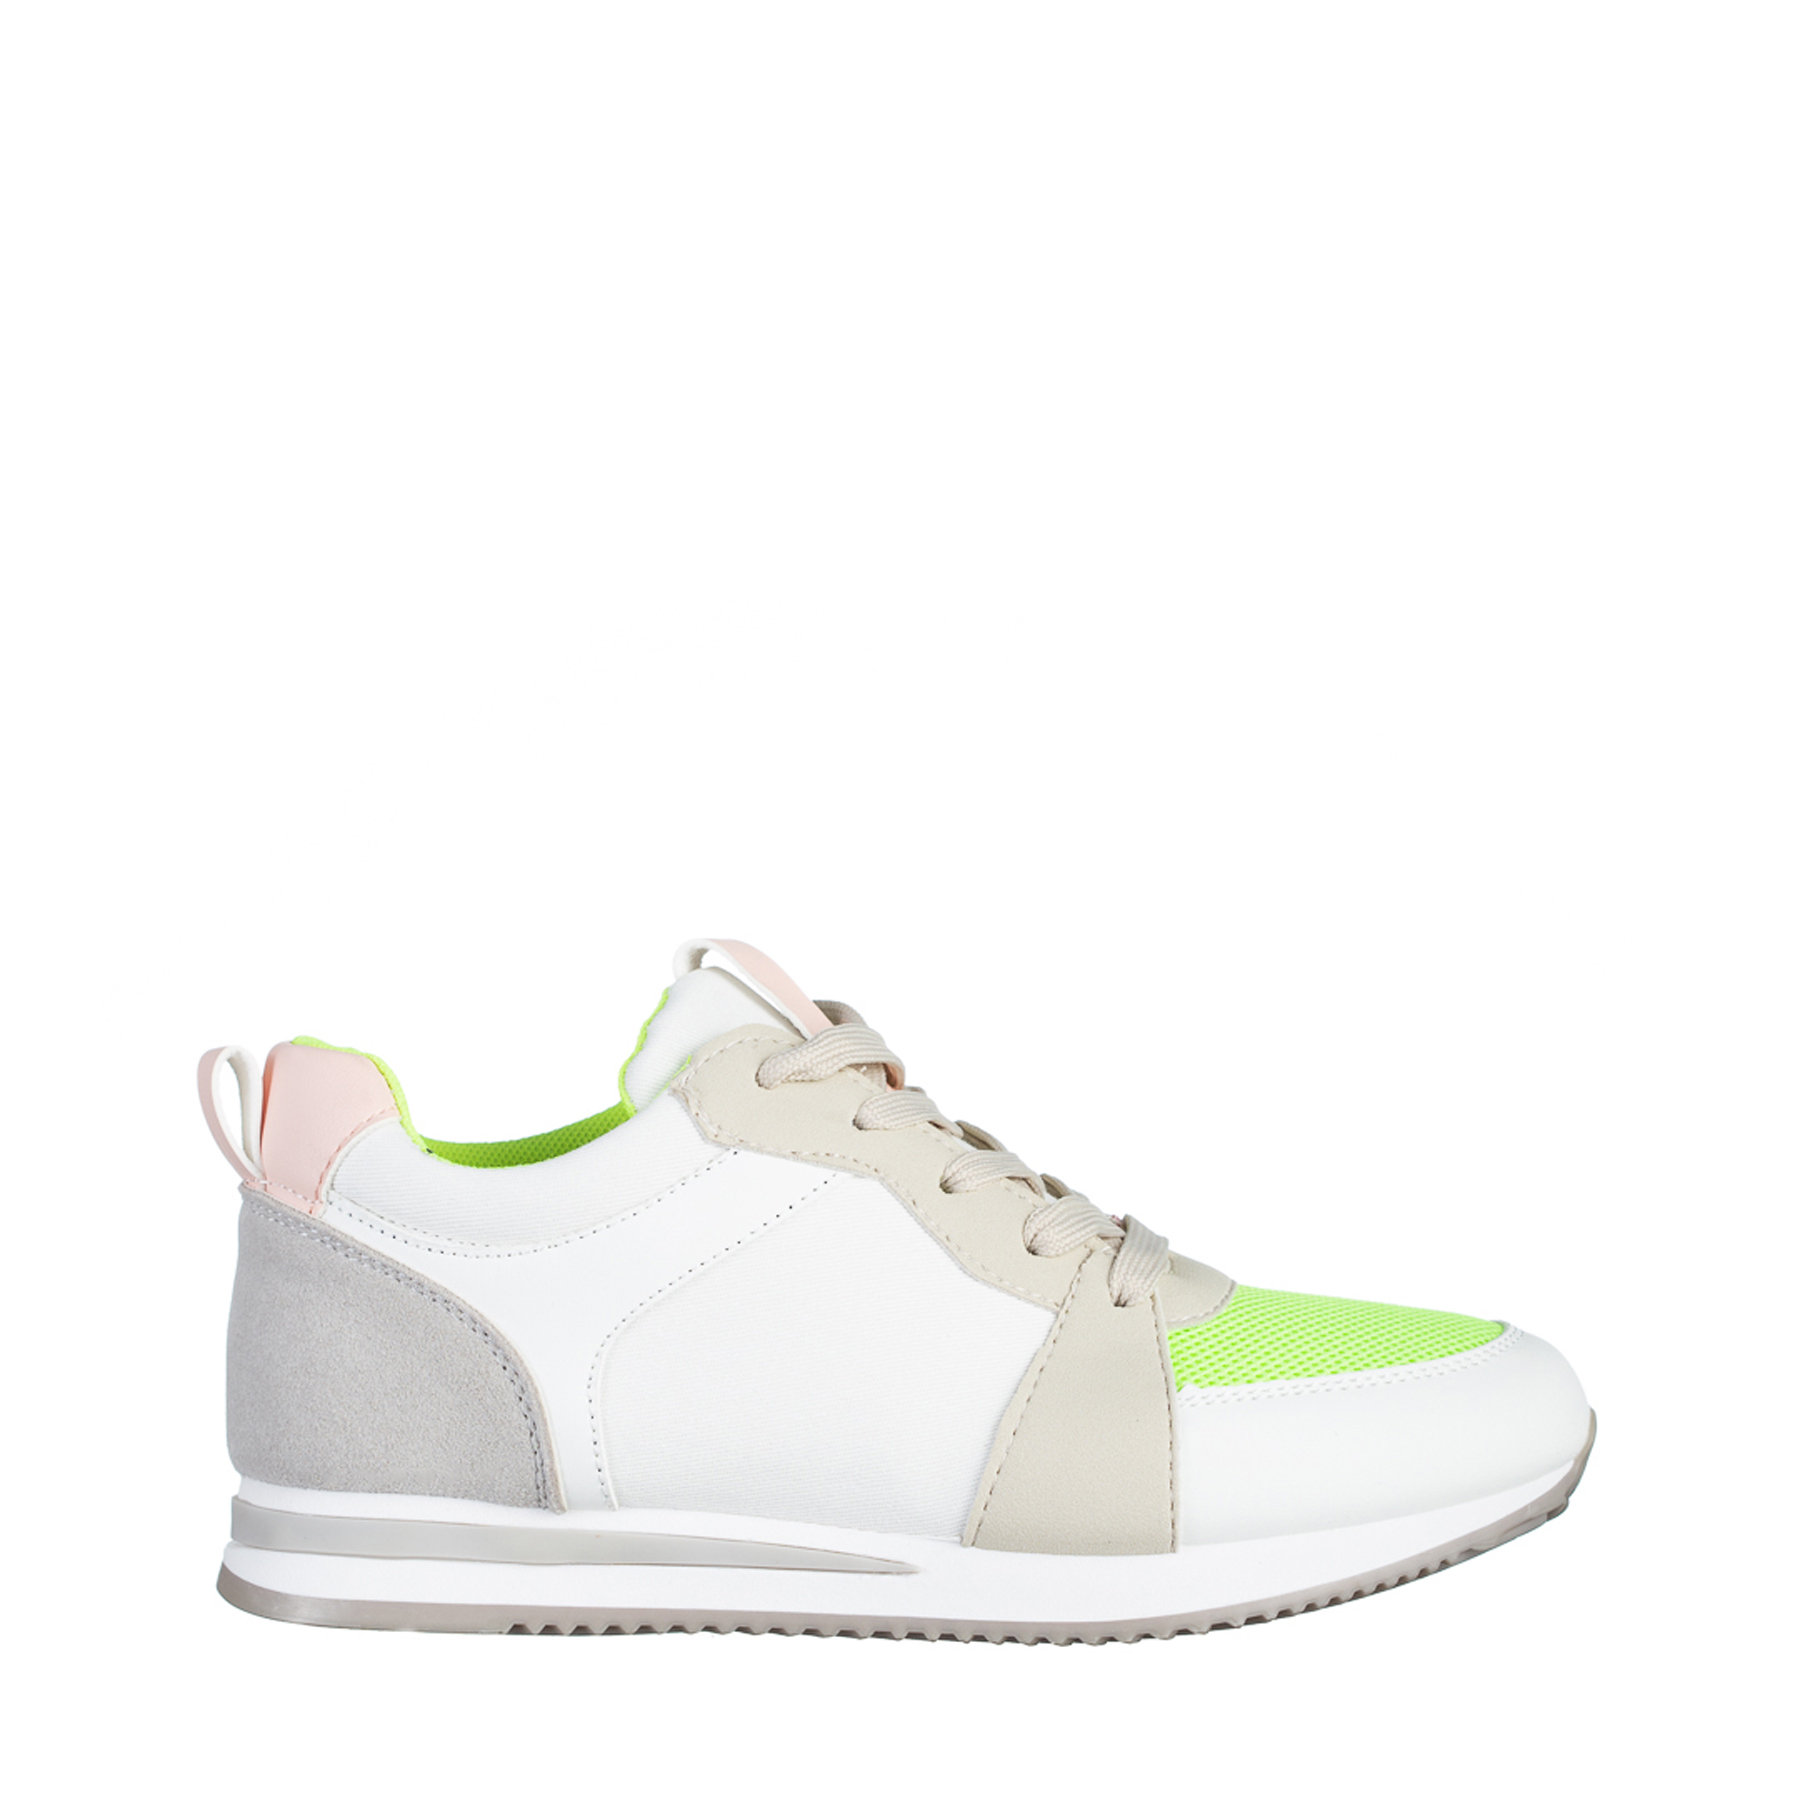 Дамски спортни обувки  бели със зелено от еко кожа и текстилен материал  Clarita, 2 - Kalapod.bg